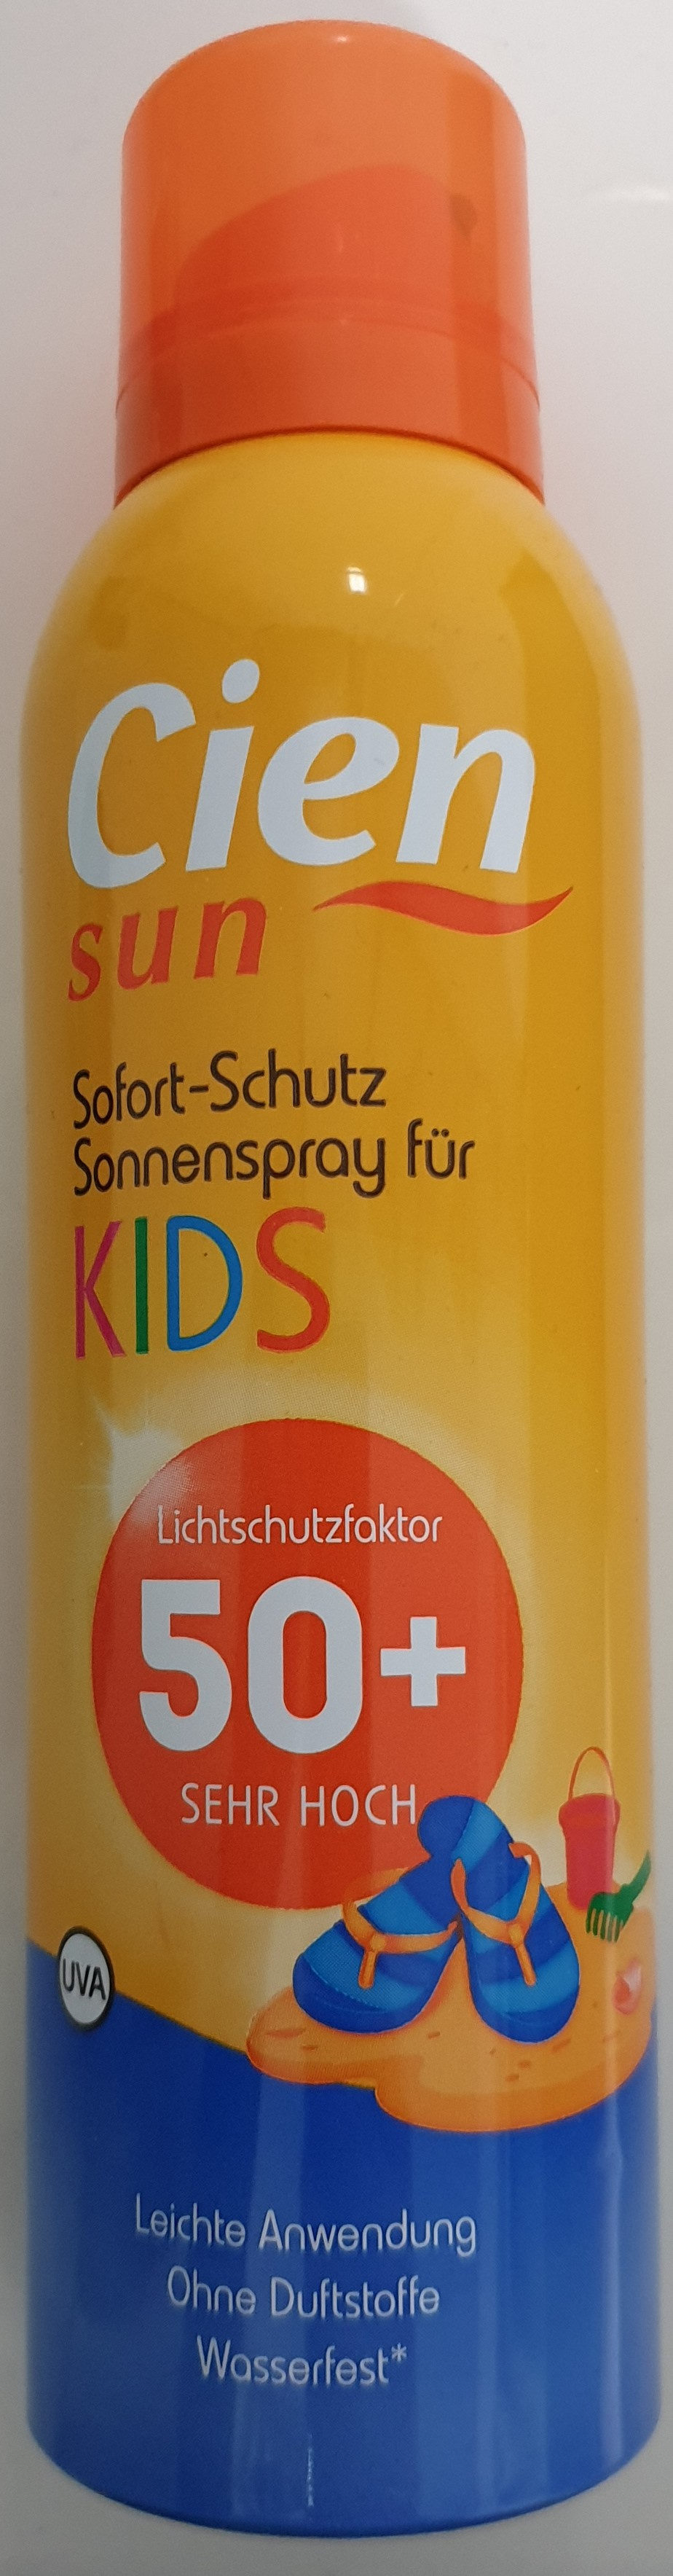 Sofort-Schutz Sonnenspray für Kids 50+ - Produit - de